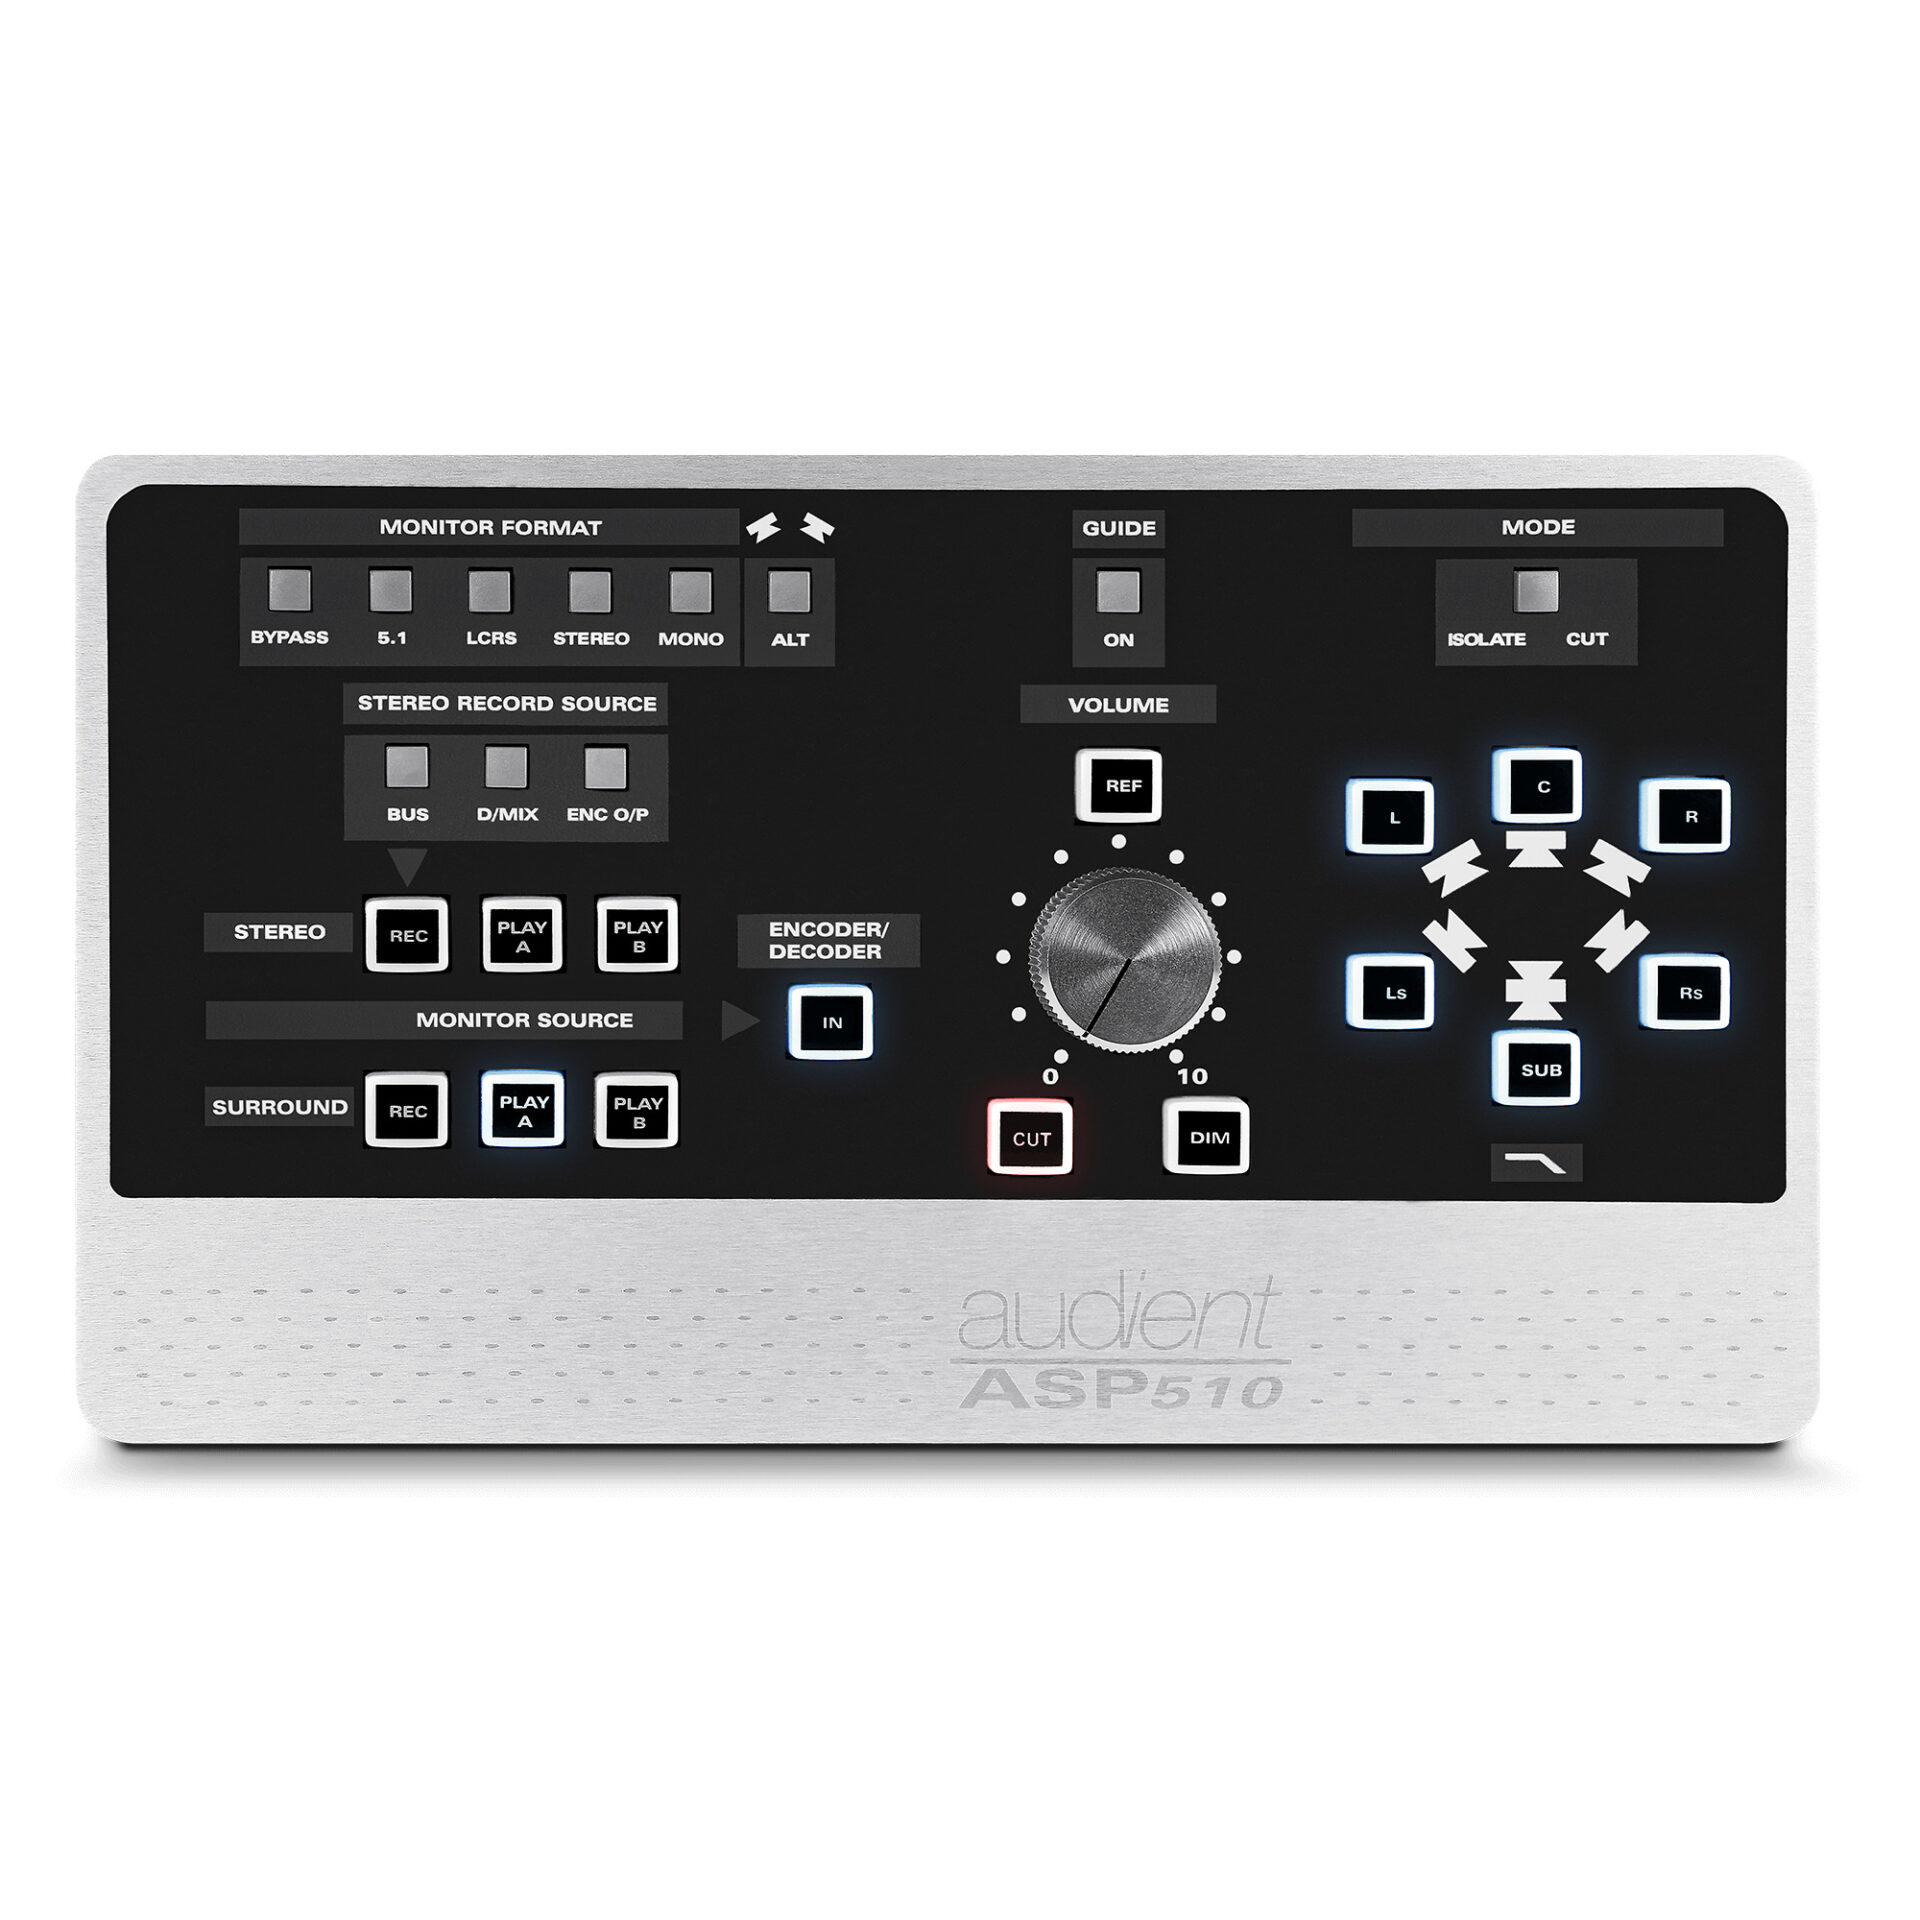 AUDIENT ASP510 - Surround Sound Controller